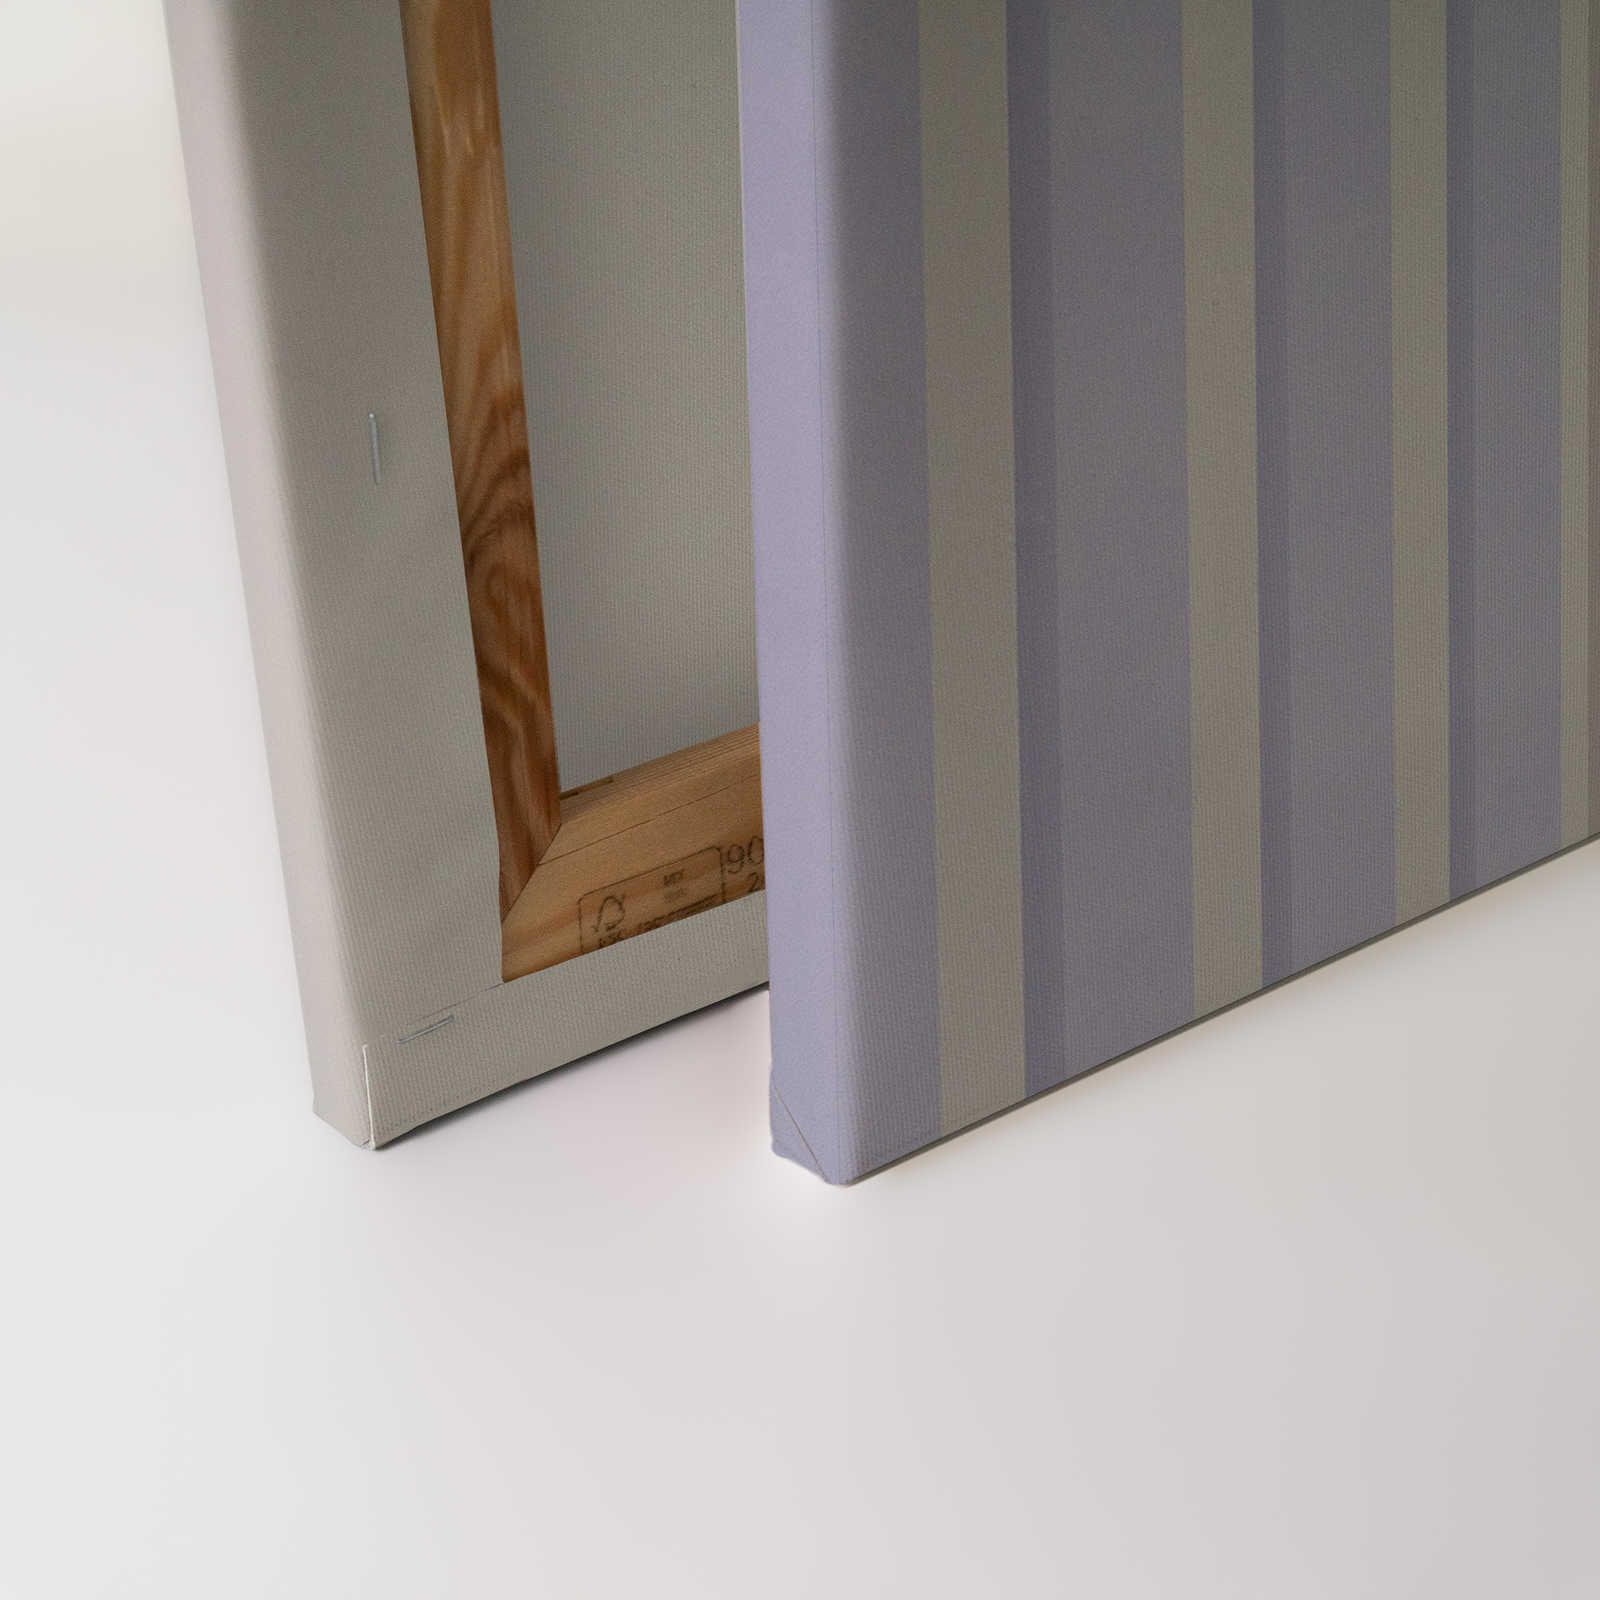             Illusion Room 1 - Cuadro en lienzo Diseño de rayas 3D en morado y gris - 0,90 m x 0,60 m
        